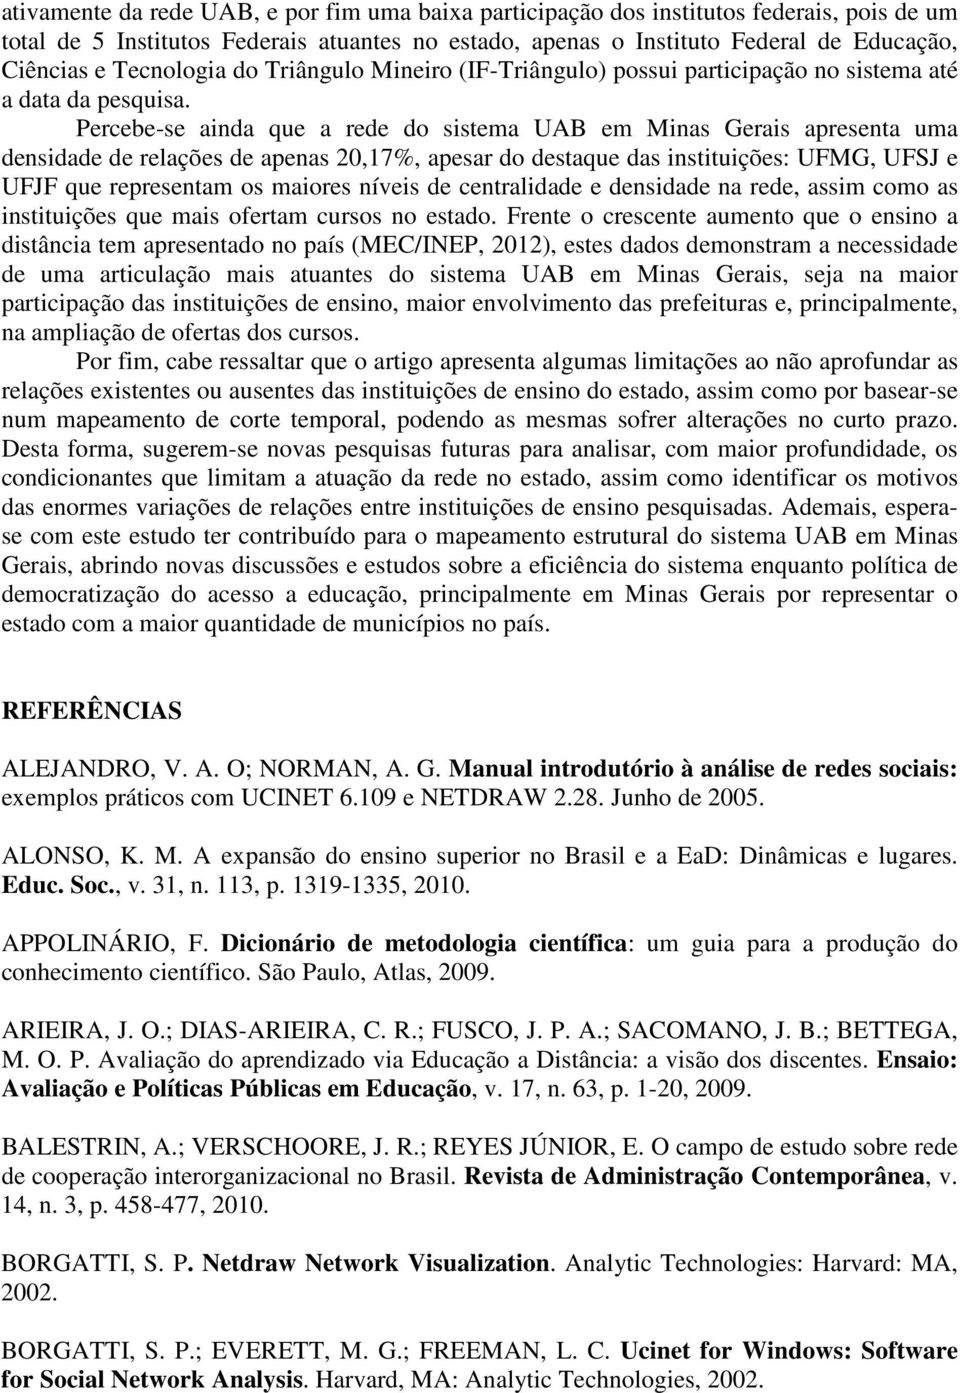 Percebe-se ainda que a rede do sistema UAB em Minas Gerais apresenta uma densidade de relações de apenas 20,17%, apesar do destaque das instituições: UFMG, UFSJ e UFJF que representam os maiores